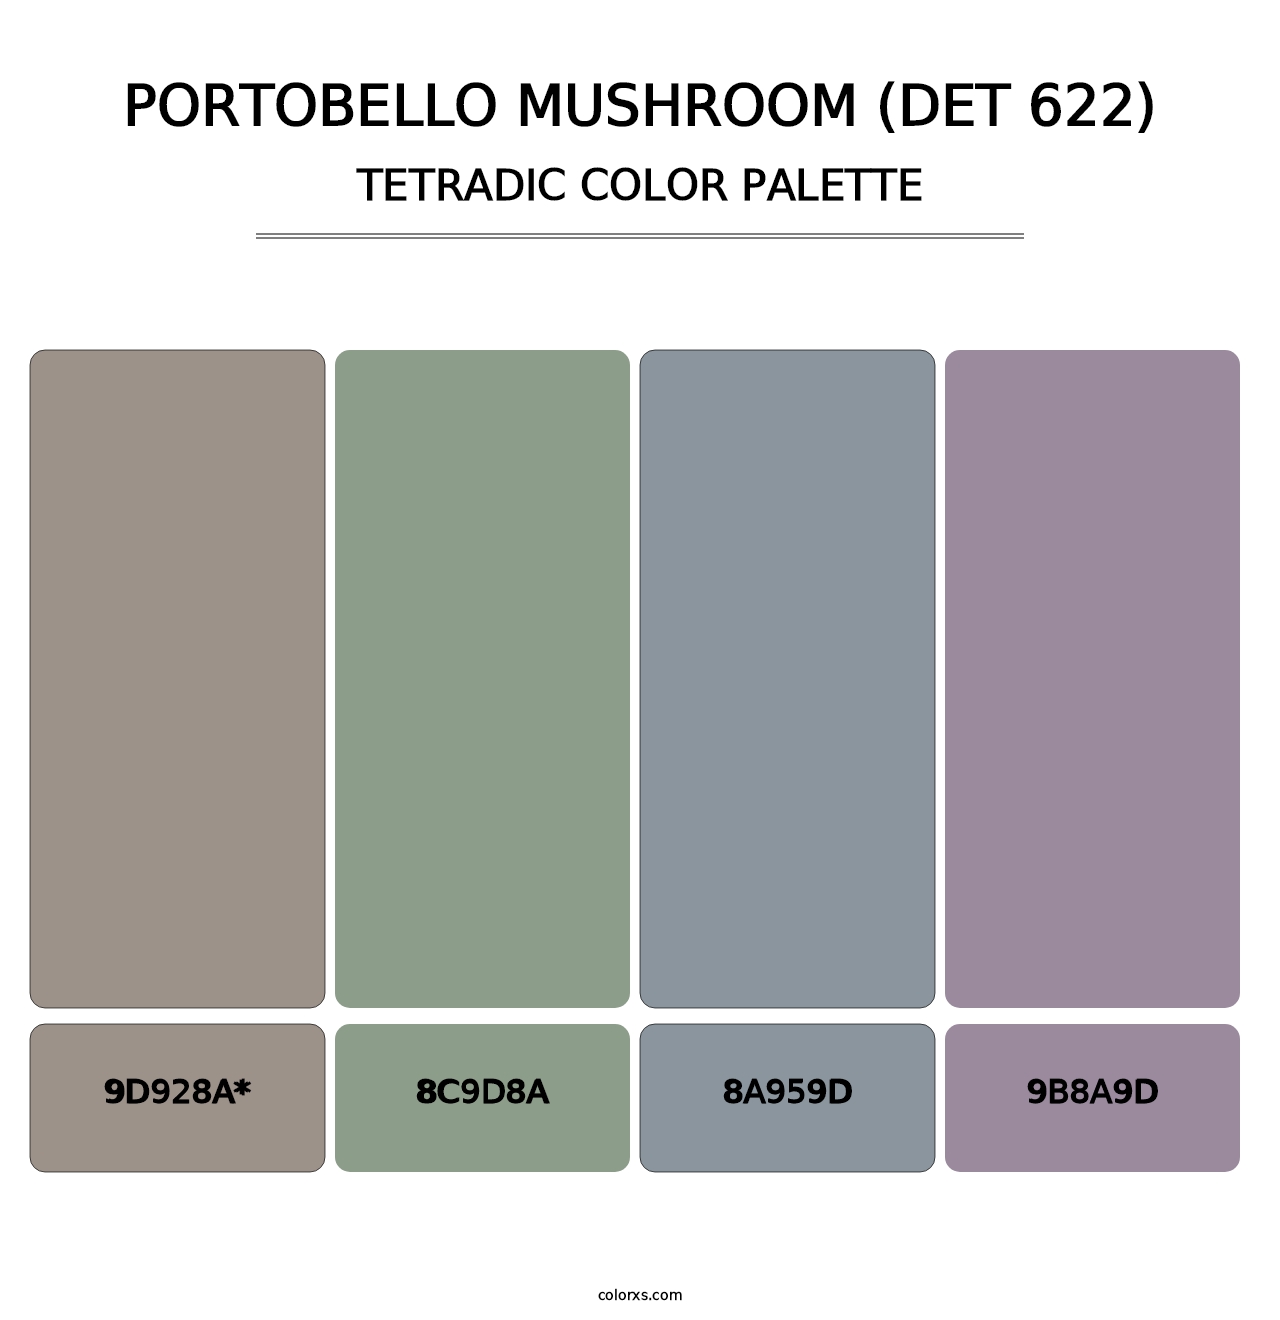 Portobello Mushroom (DET 622) - Tetradic Color Palette